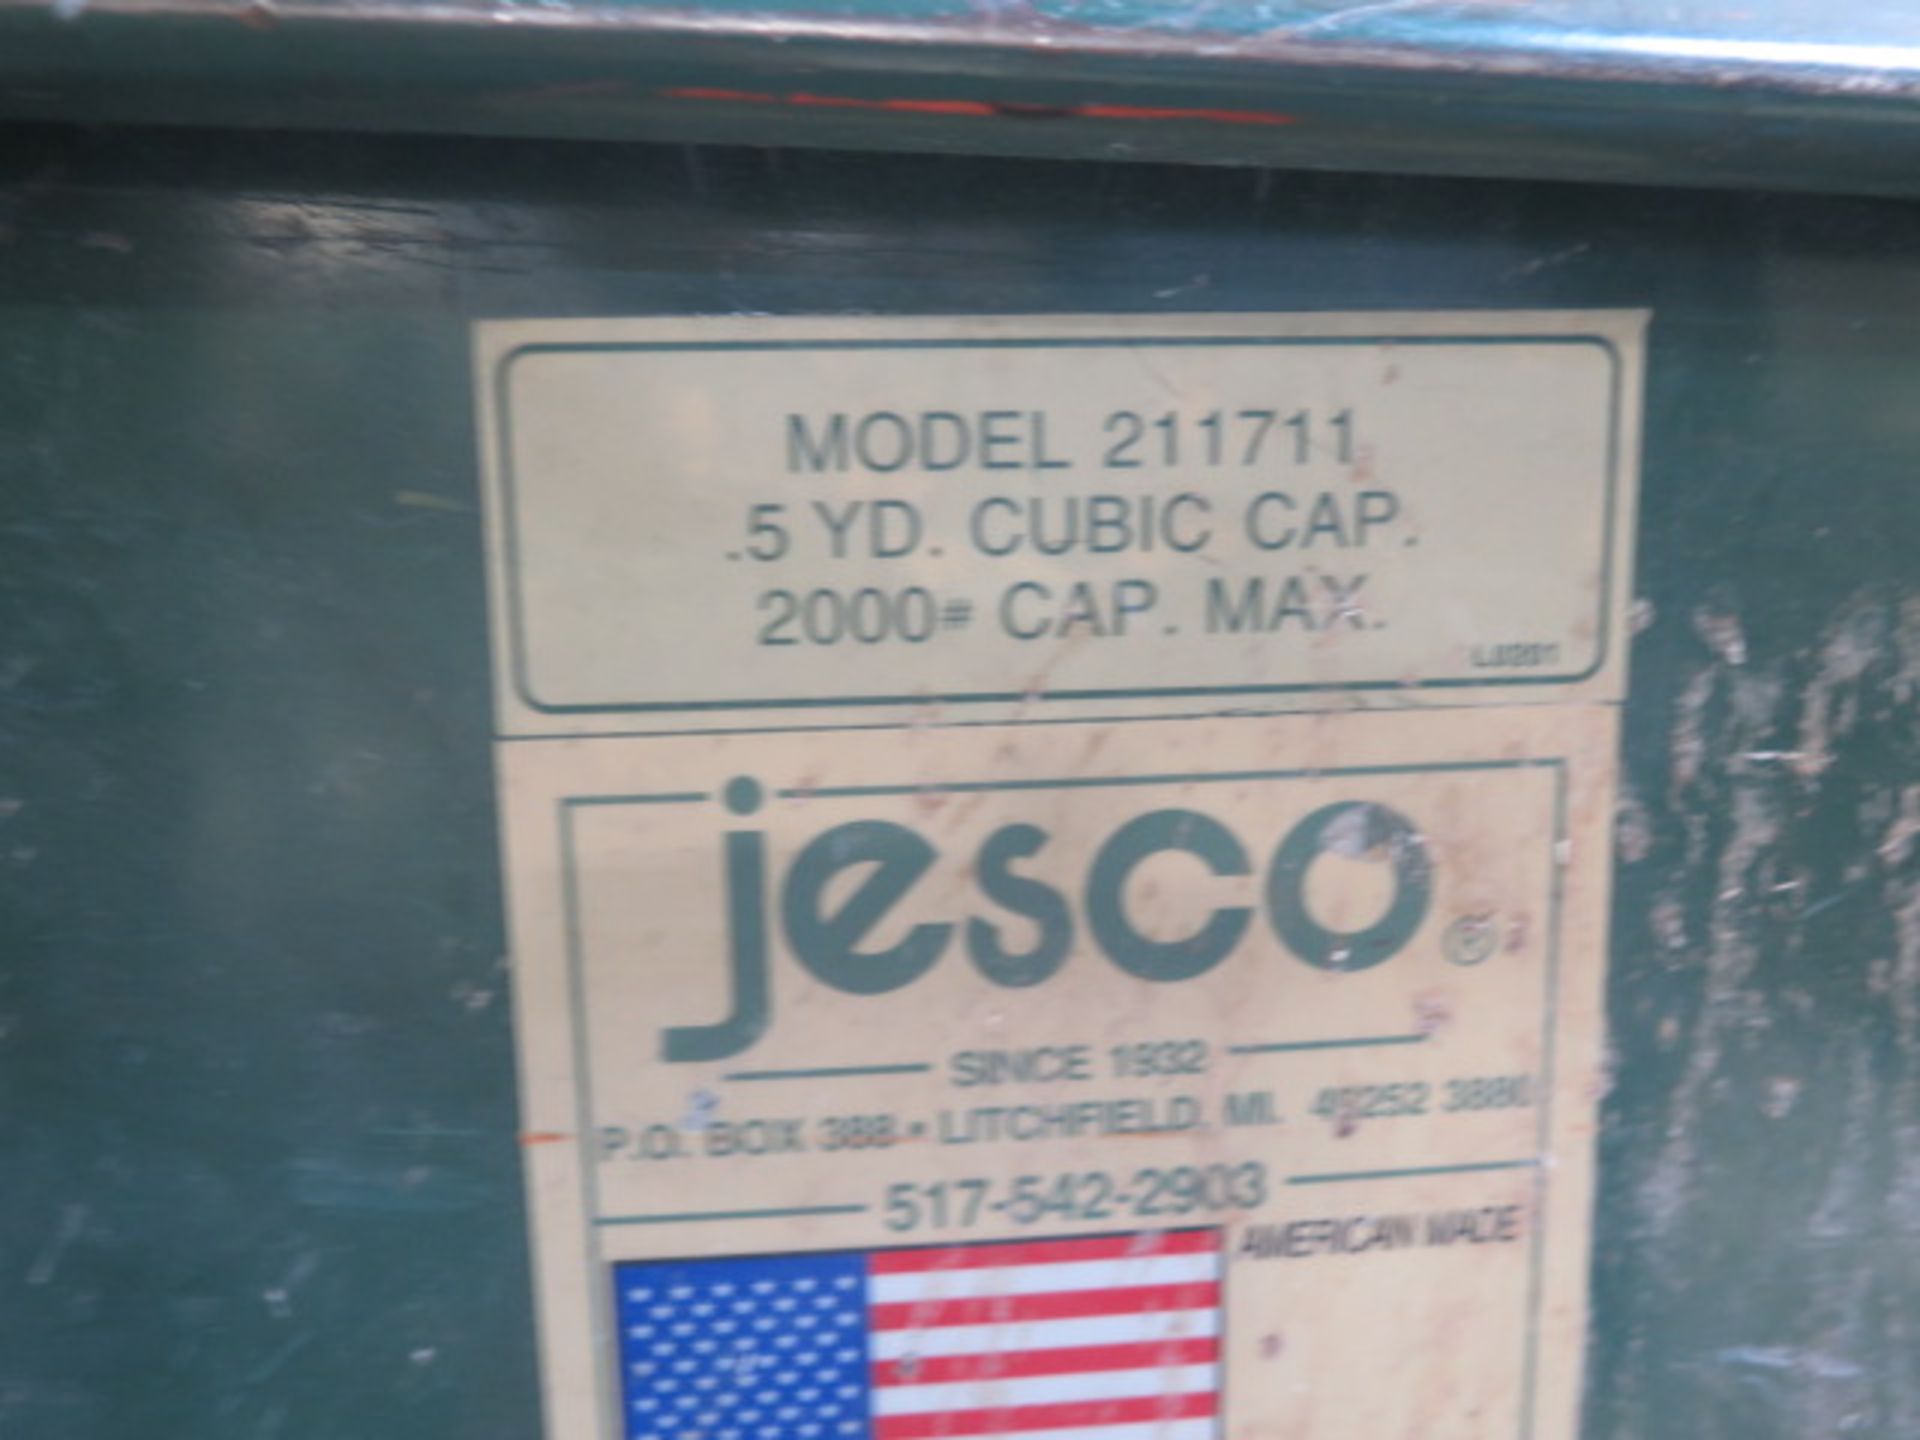 Jesco Dumping Hopper (SOLD AS-IS - NO WARRANTY) - Image 4 of 4